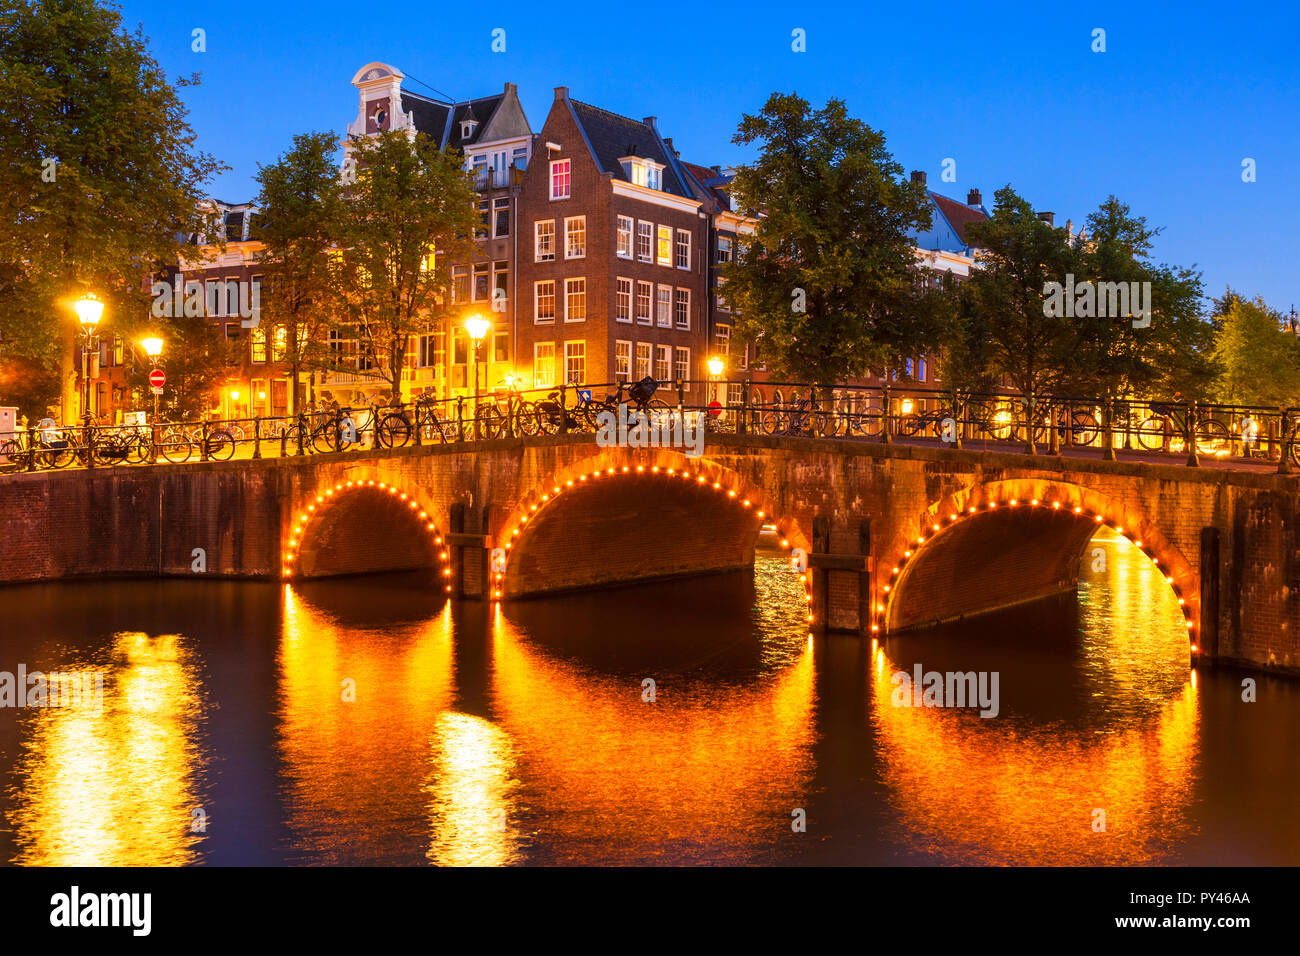 Amsterdam canal lumineux Pont sur canal Keizergracht et Leliegracht bridge Amsterdam Hollande Pays-bas eu Europe Banque D'Images